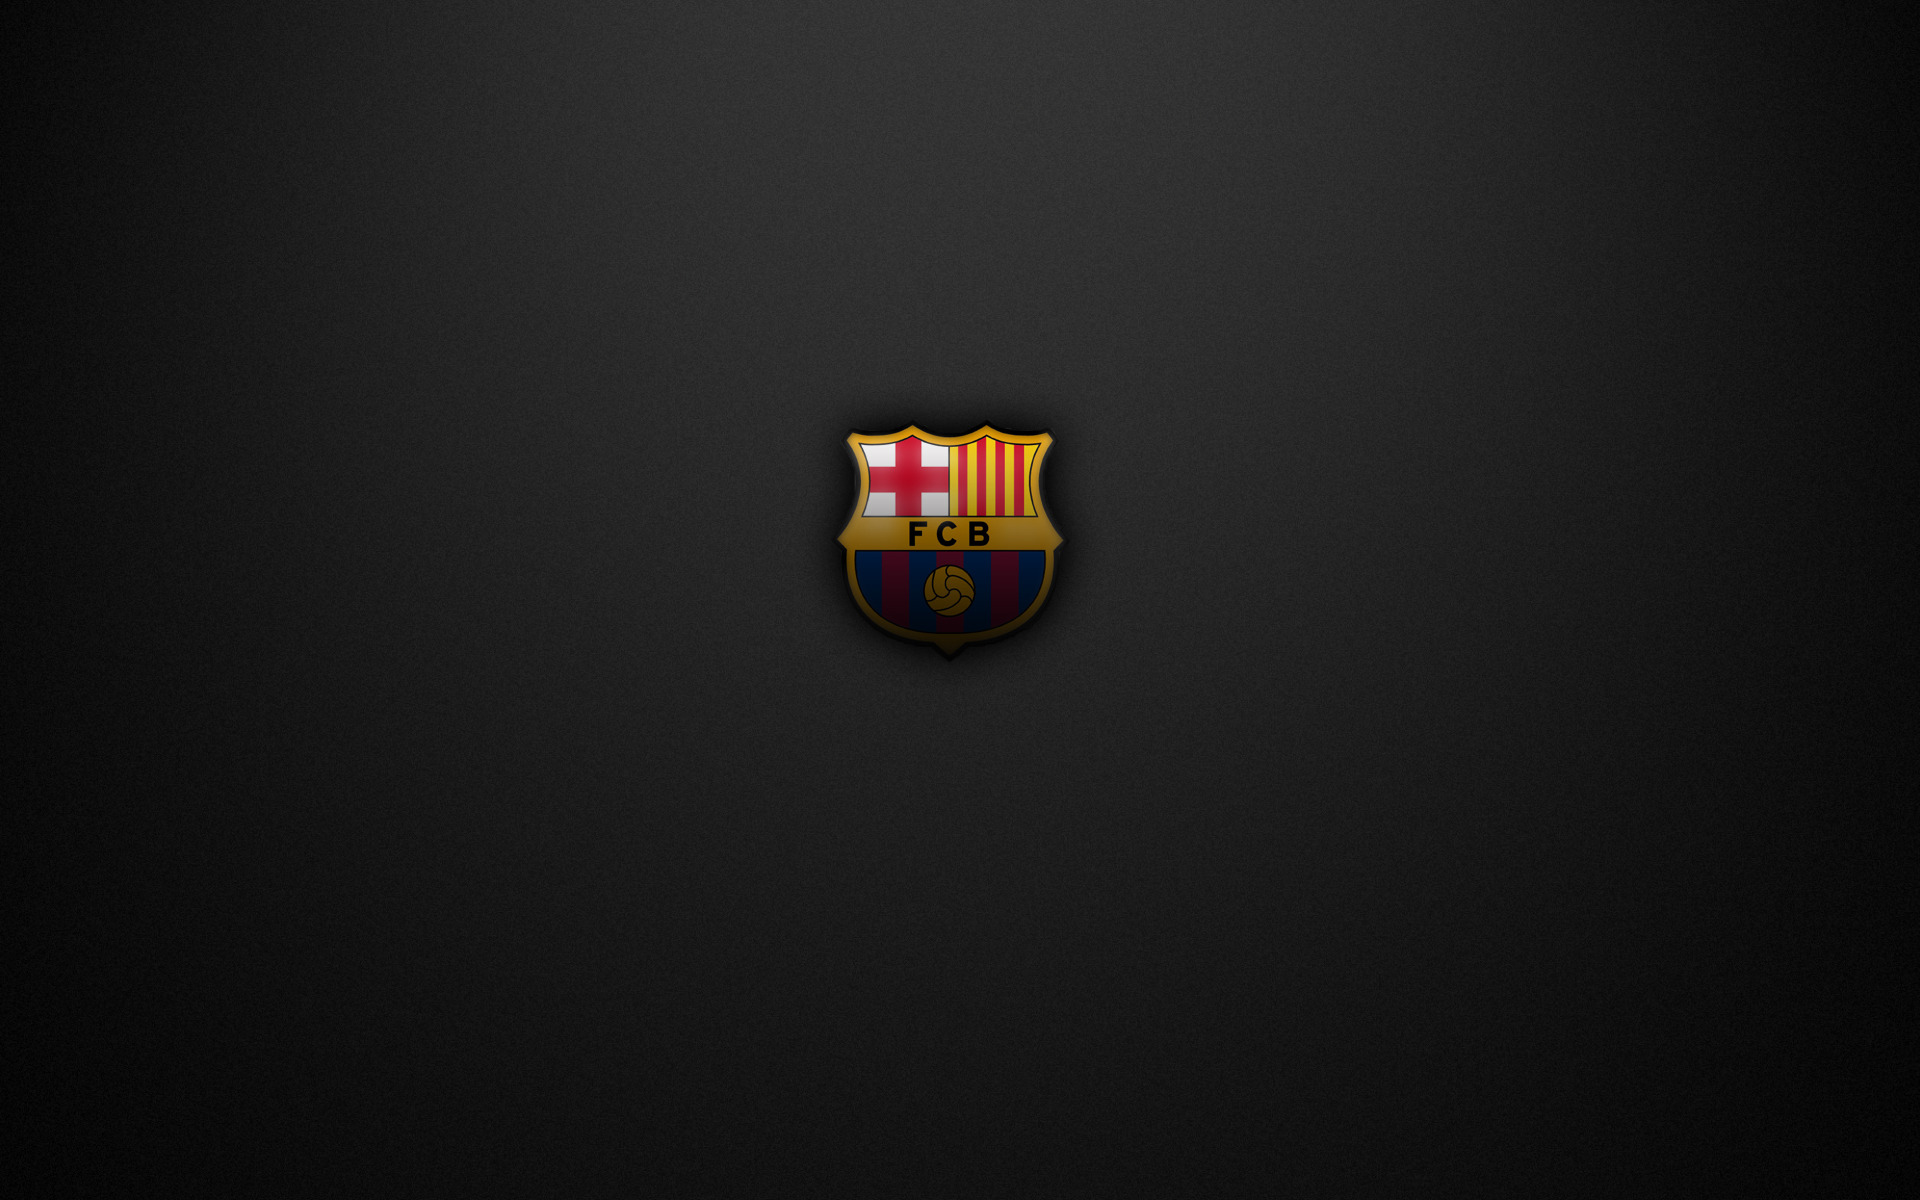 Красивая эмблема ФК Барселона на сером фоне Спорт картинки, обои рабочий стол